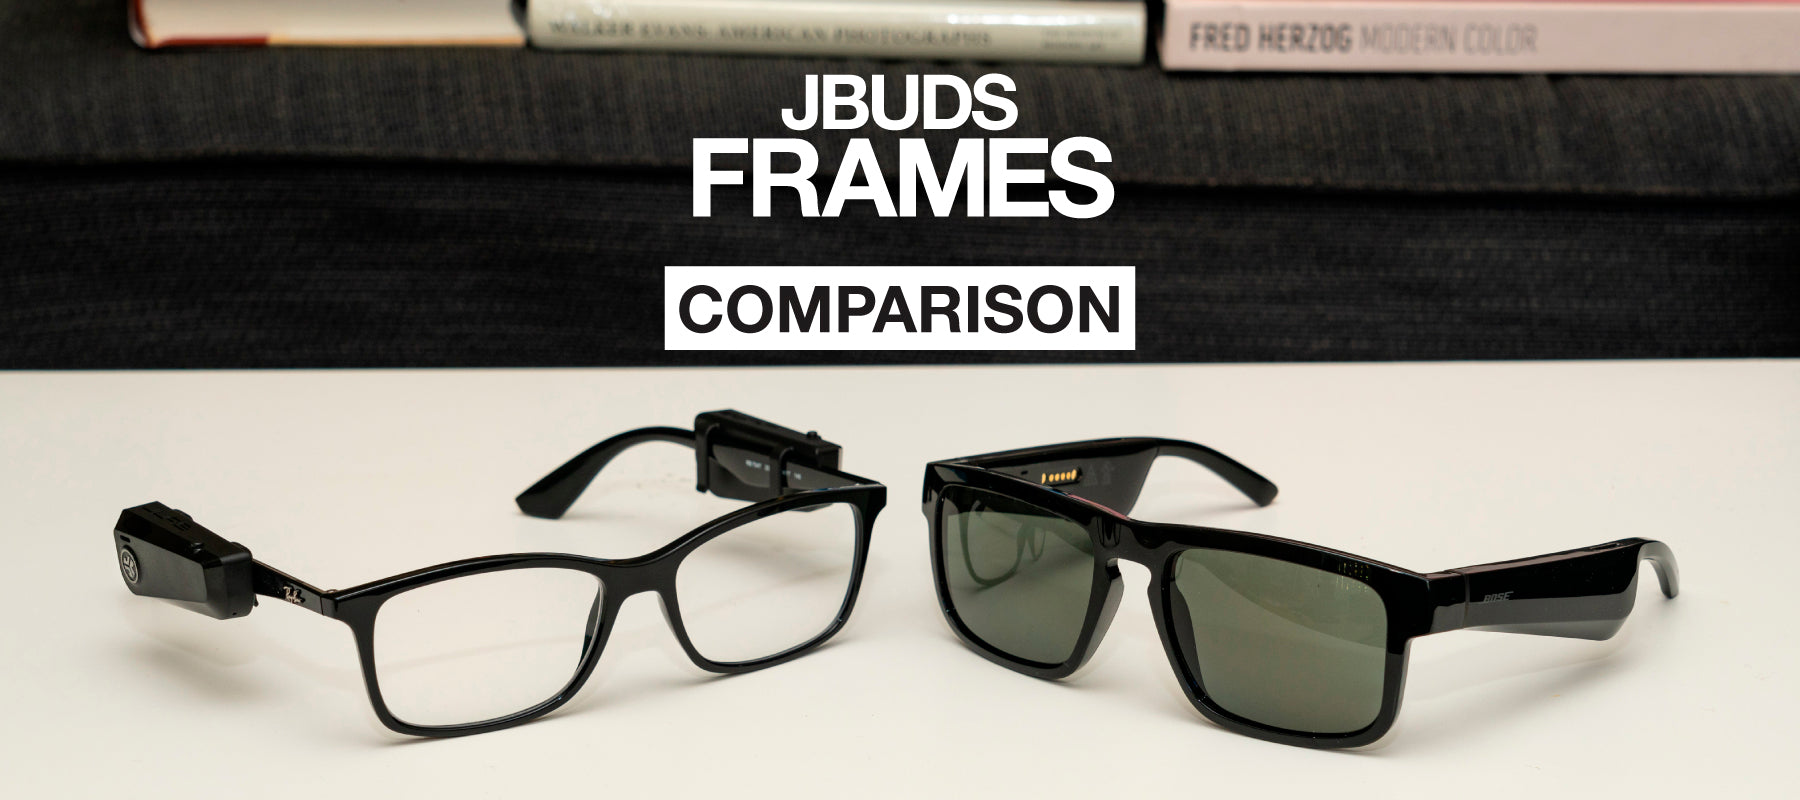 JBuds Frames: Comparison